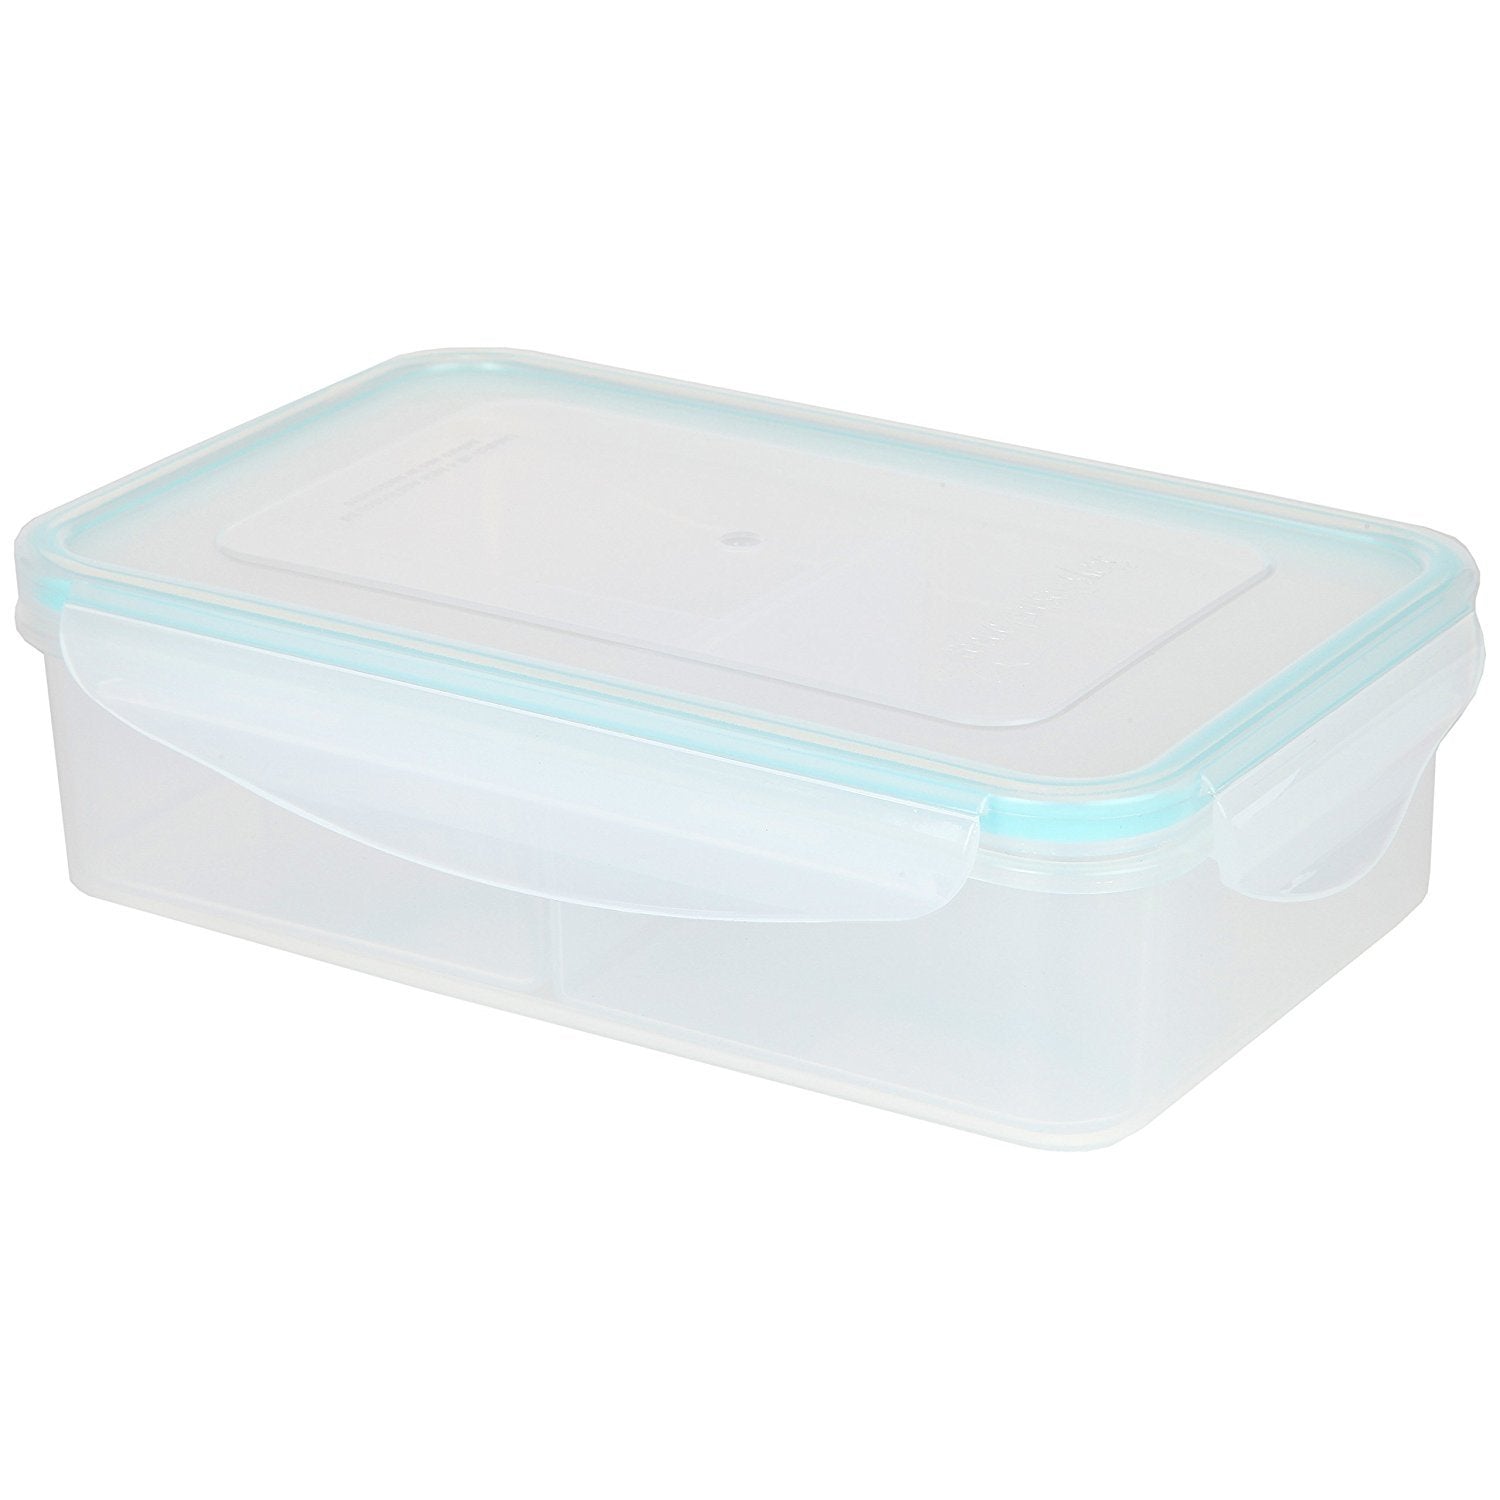 Polypropylene Bento Box Lunch Box Meal Prep Containers Reusable 4